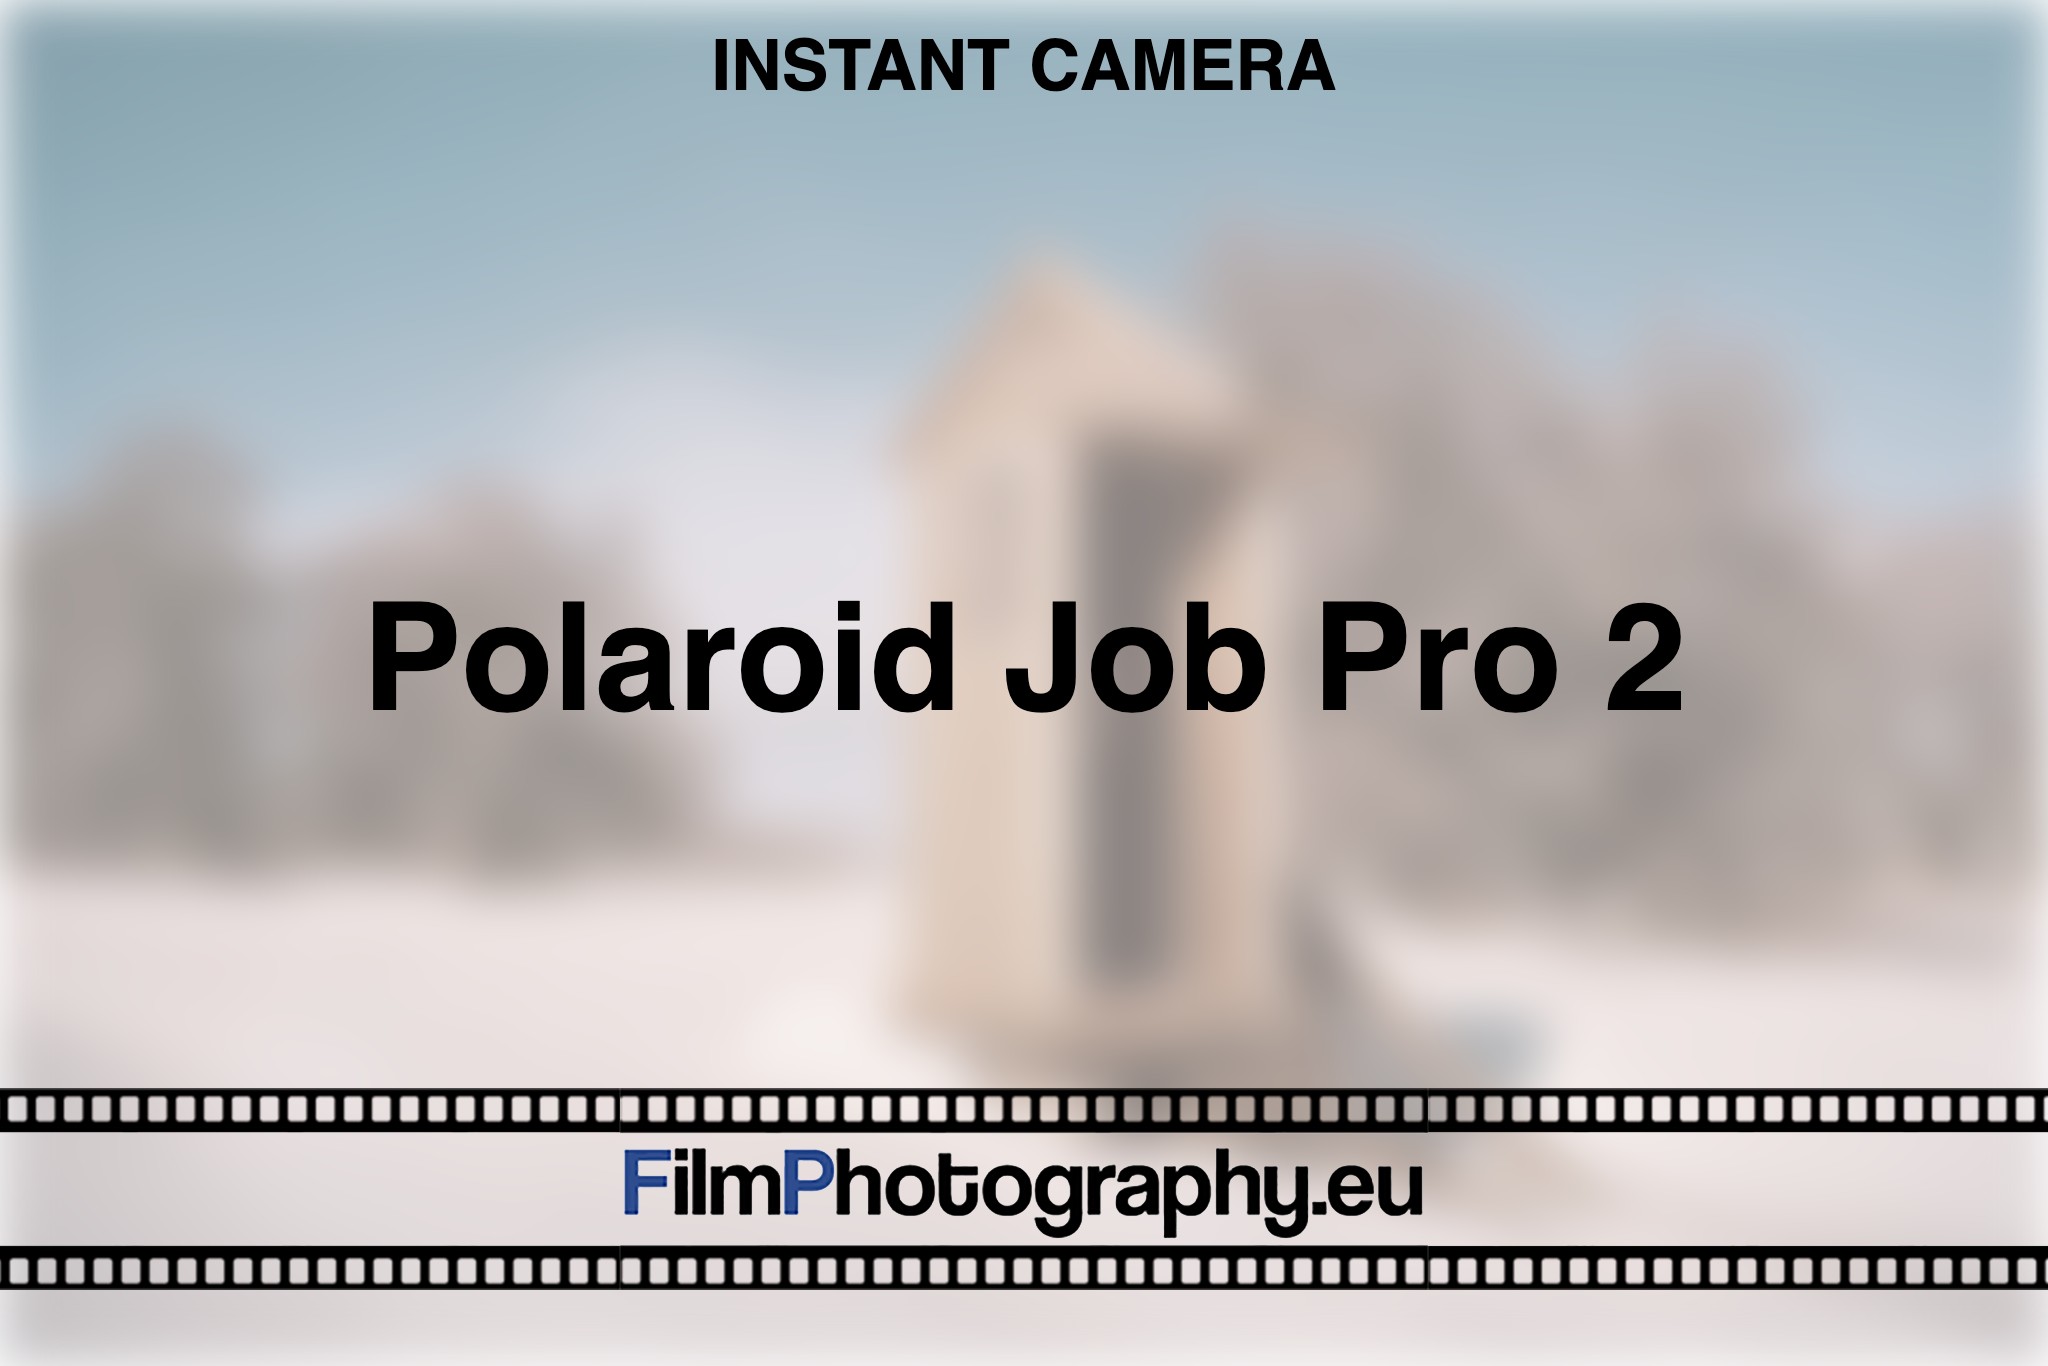 polaroid-job-pro-2-instant-camera-bnv